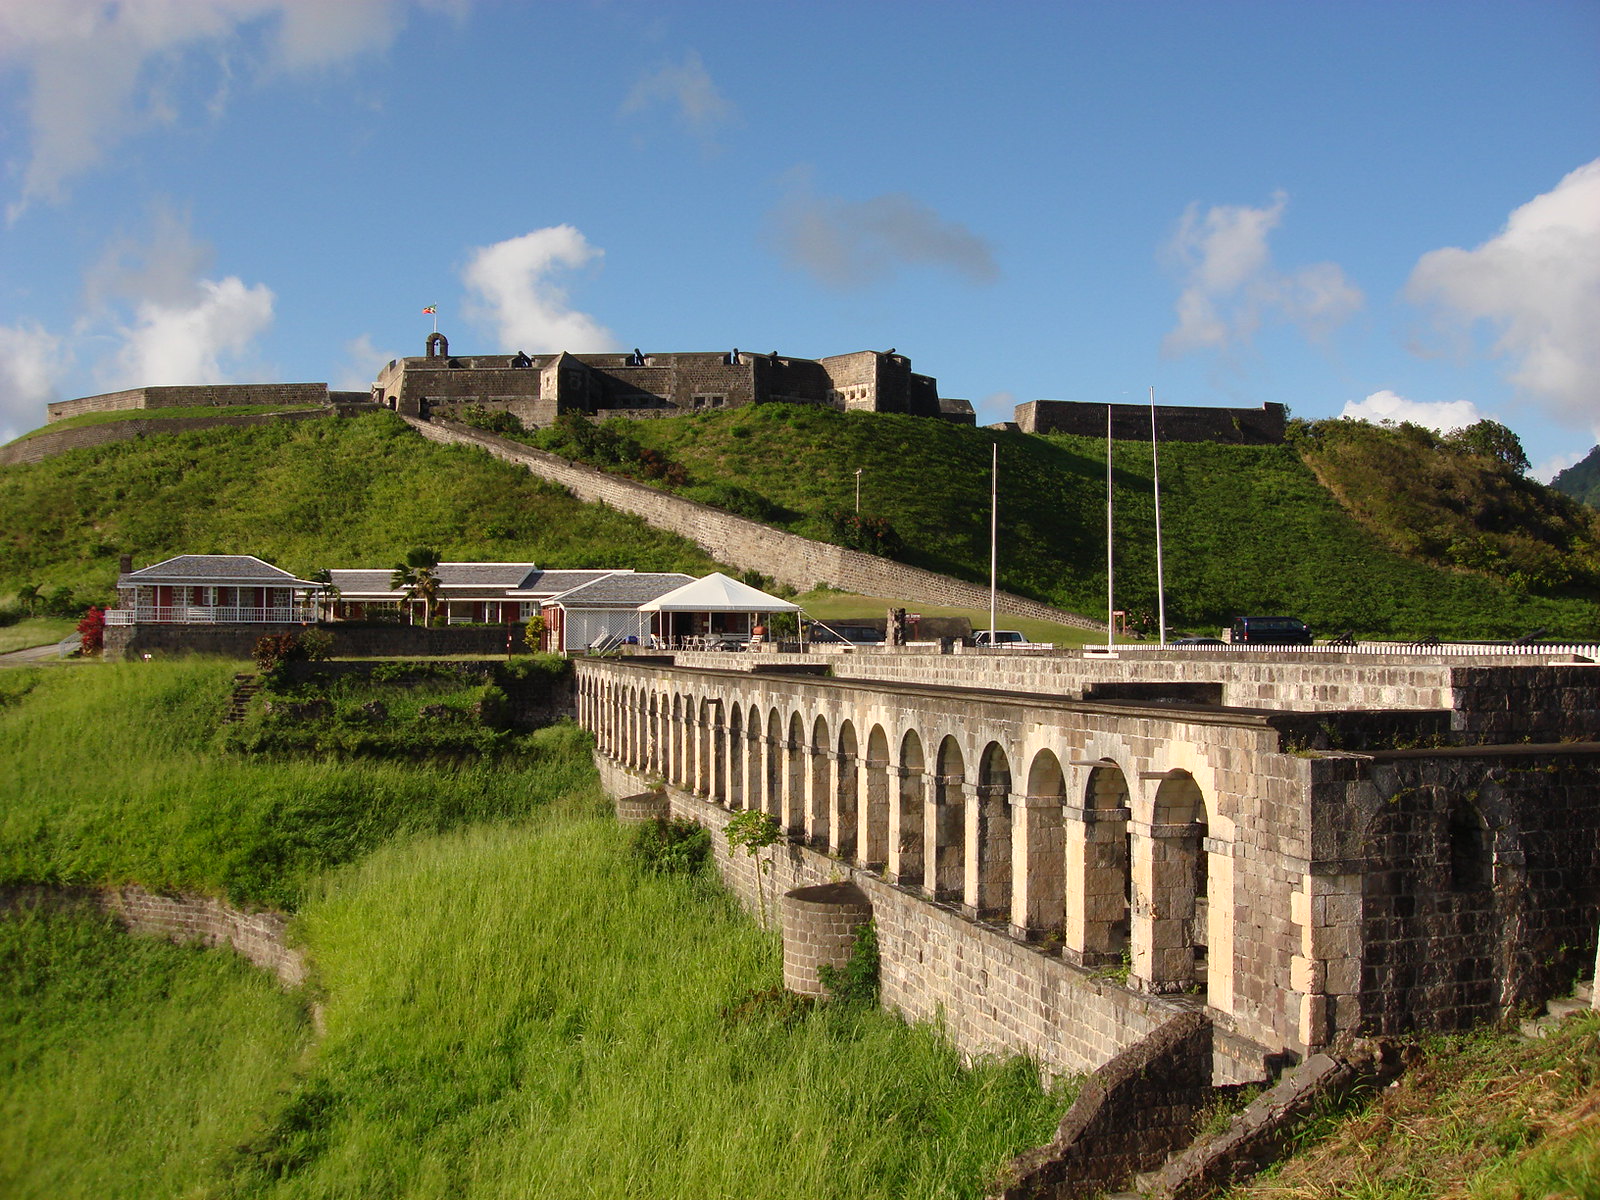 Brimstone Hill fortress - St. Kitts